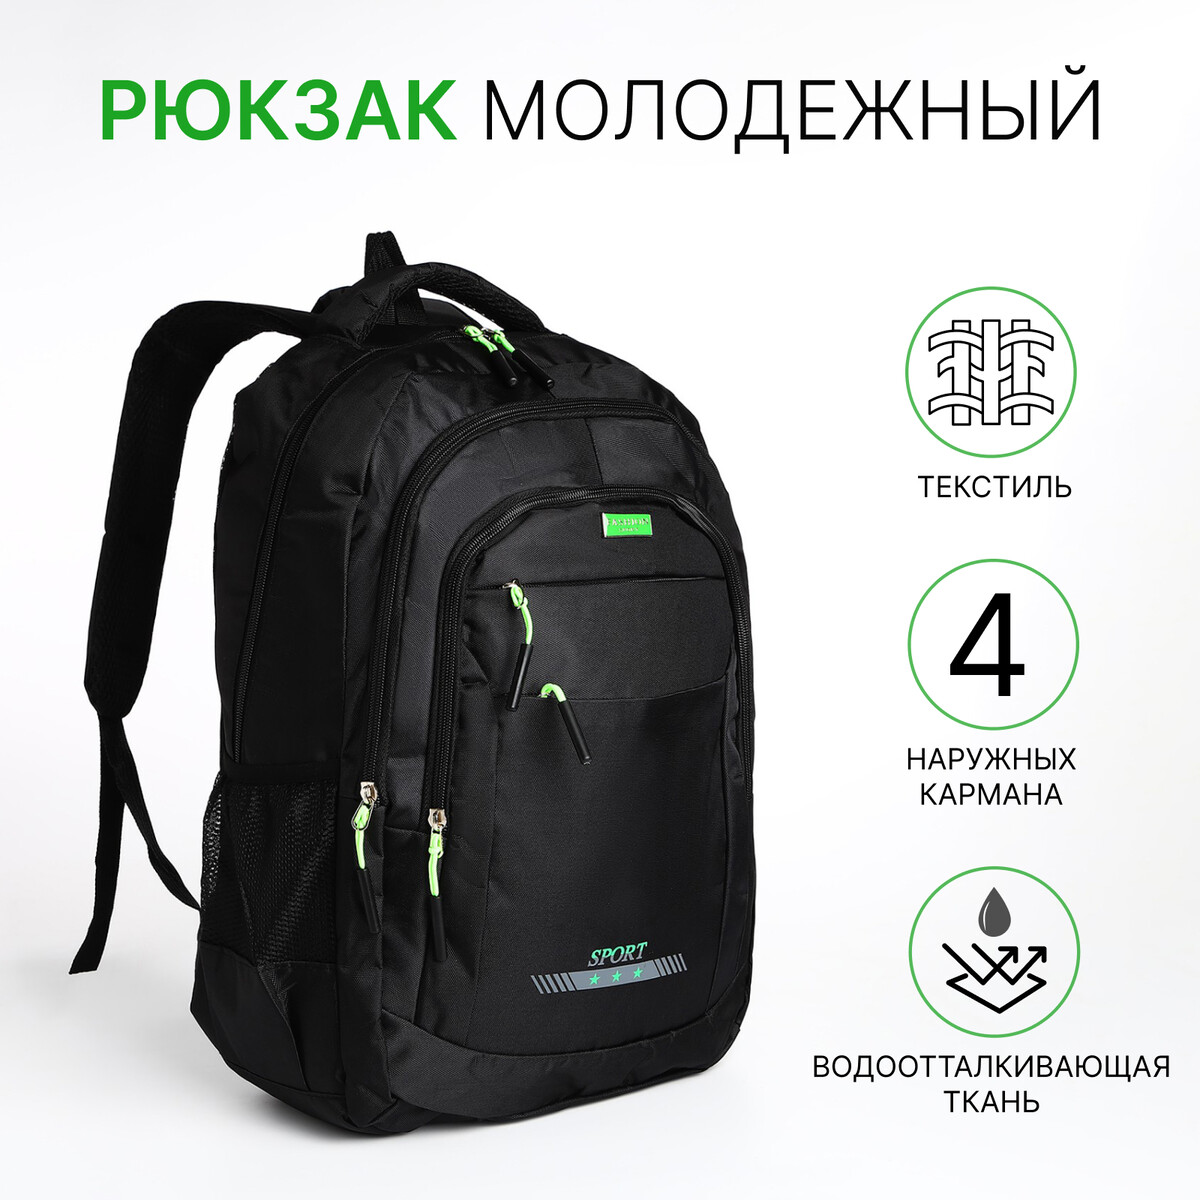 Рюкзак мужской на молнии, 4 наружных кармана, цвет черный/зеленый